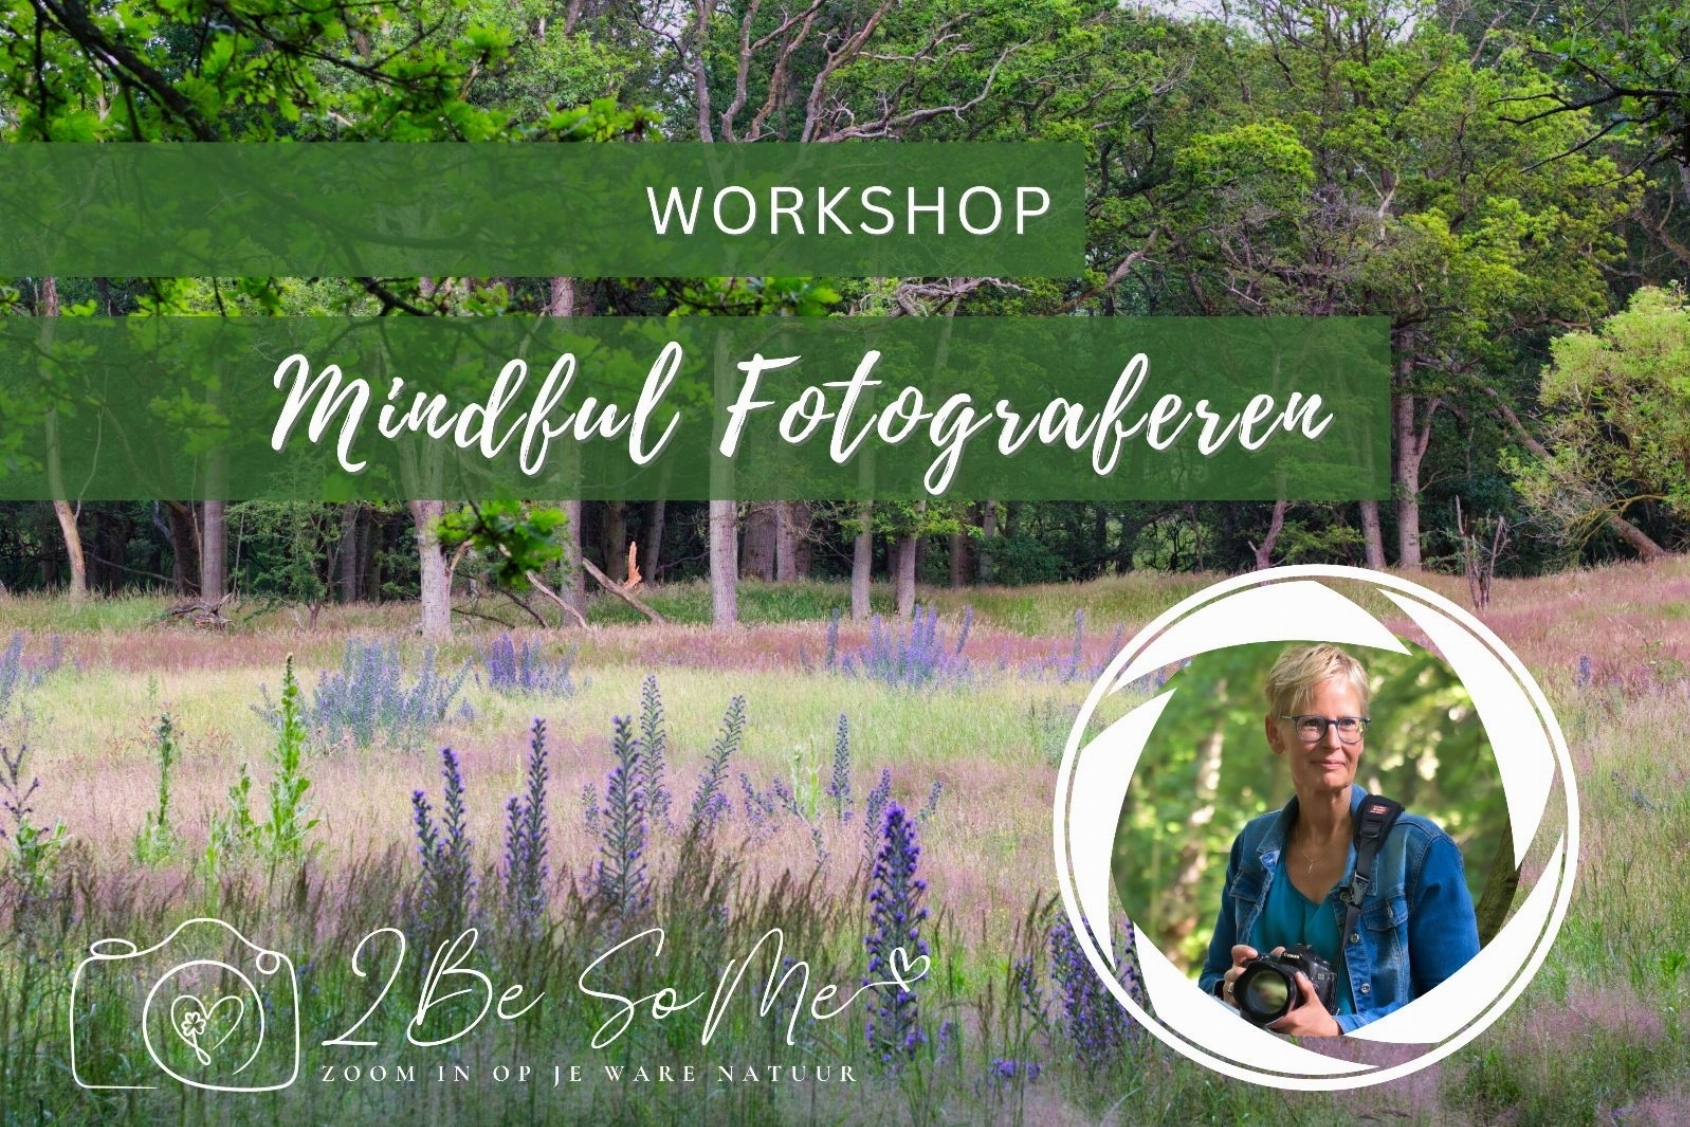 Workshop Mindful fotograferen